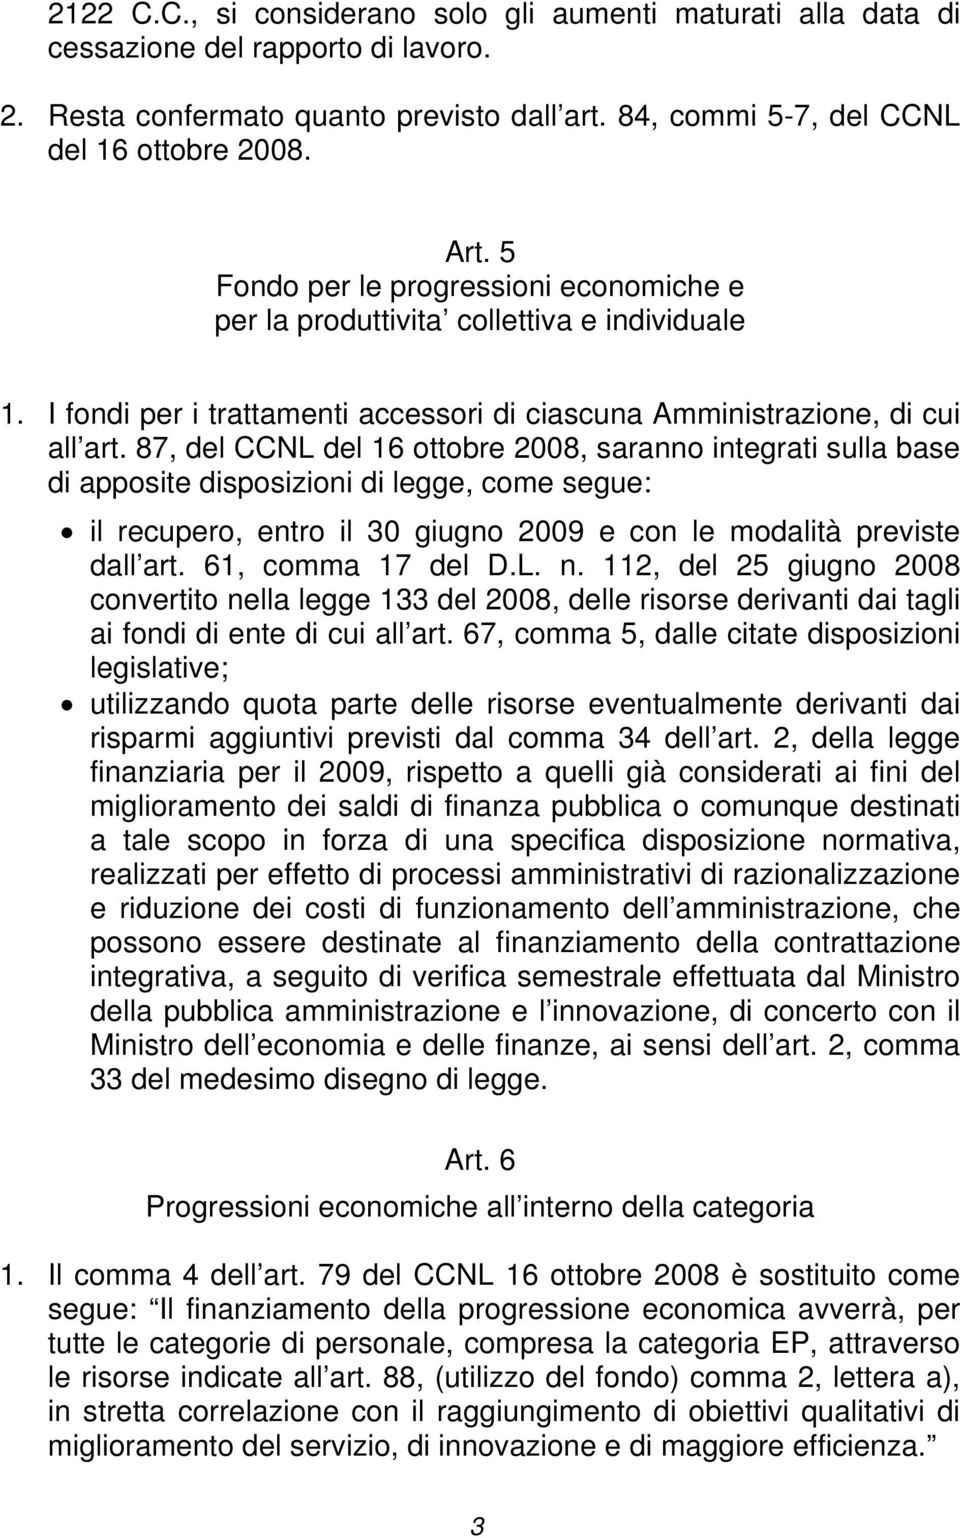 87, del CCNL del 16 ottobre 2008, saranno integrati sulla base di apposite disposizioni di legge, come segue: il recupero, entro il 30 giugno 2009 e con le modalità previste dall art.